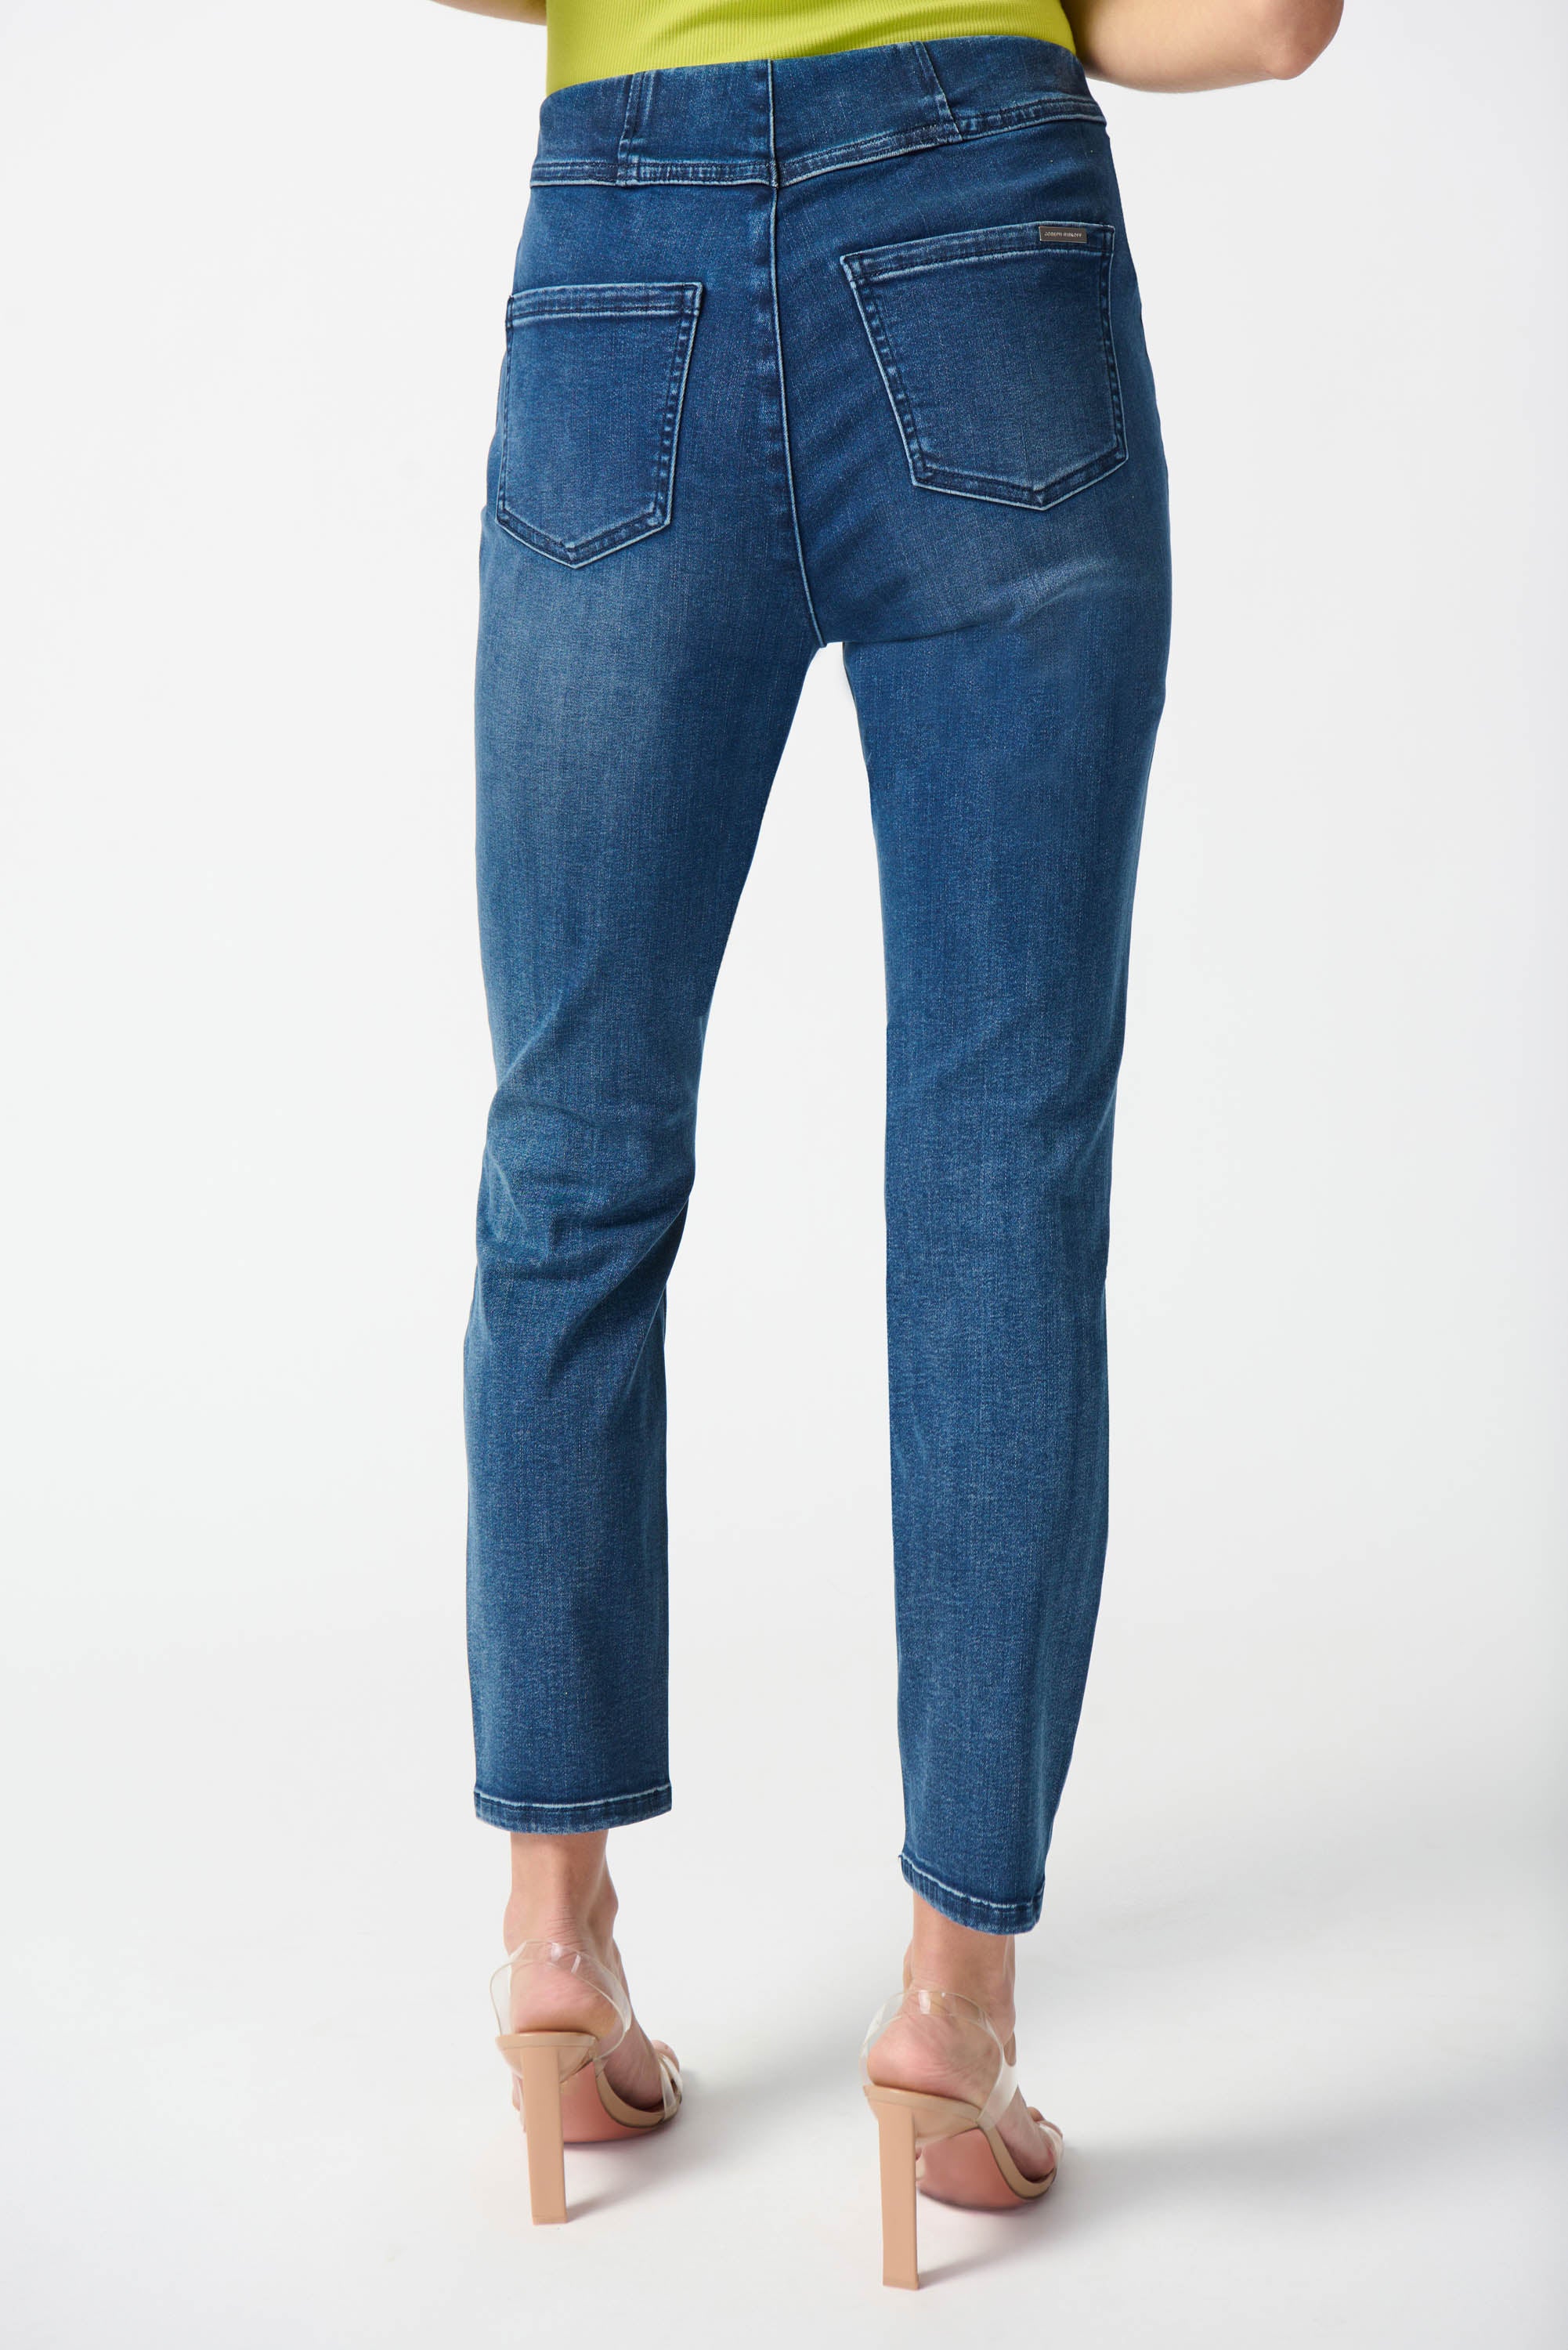 Joseph Ribkoff Slim Fit Pull-On Jeans Denim - 242924